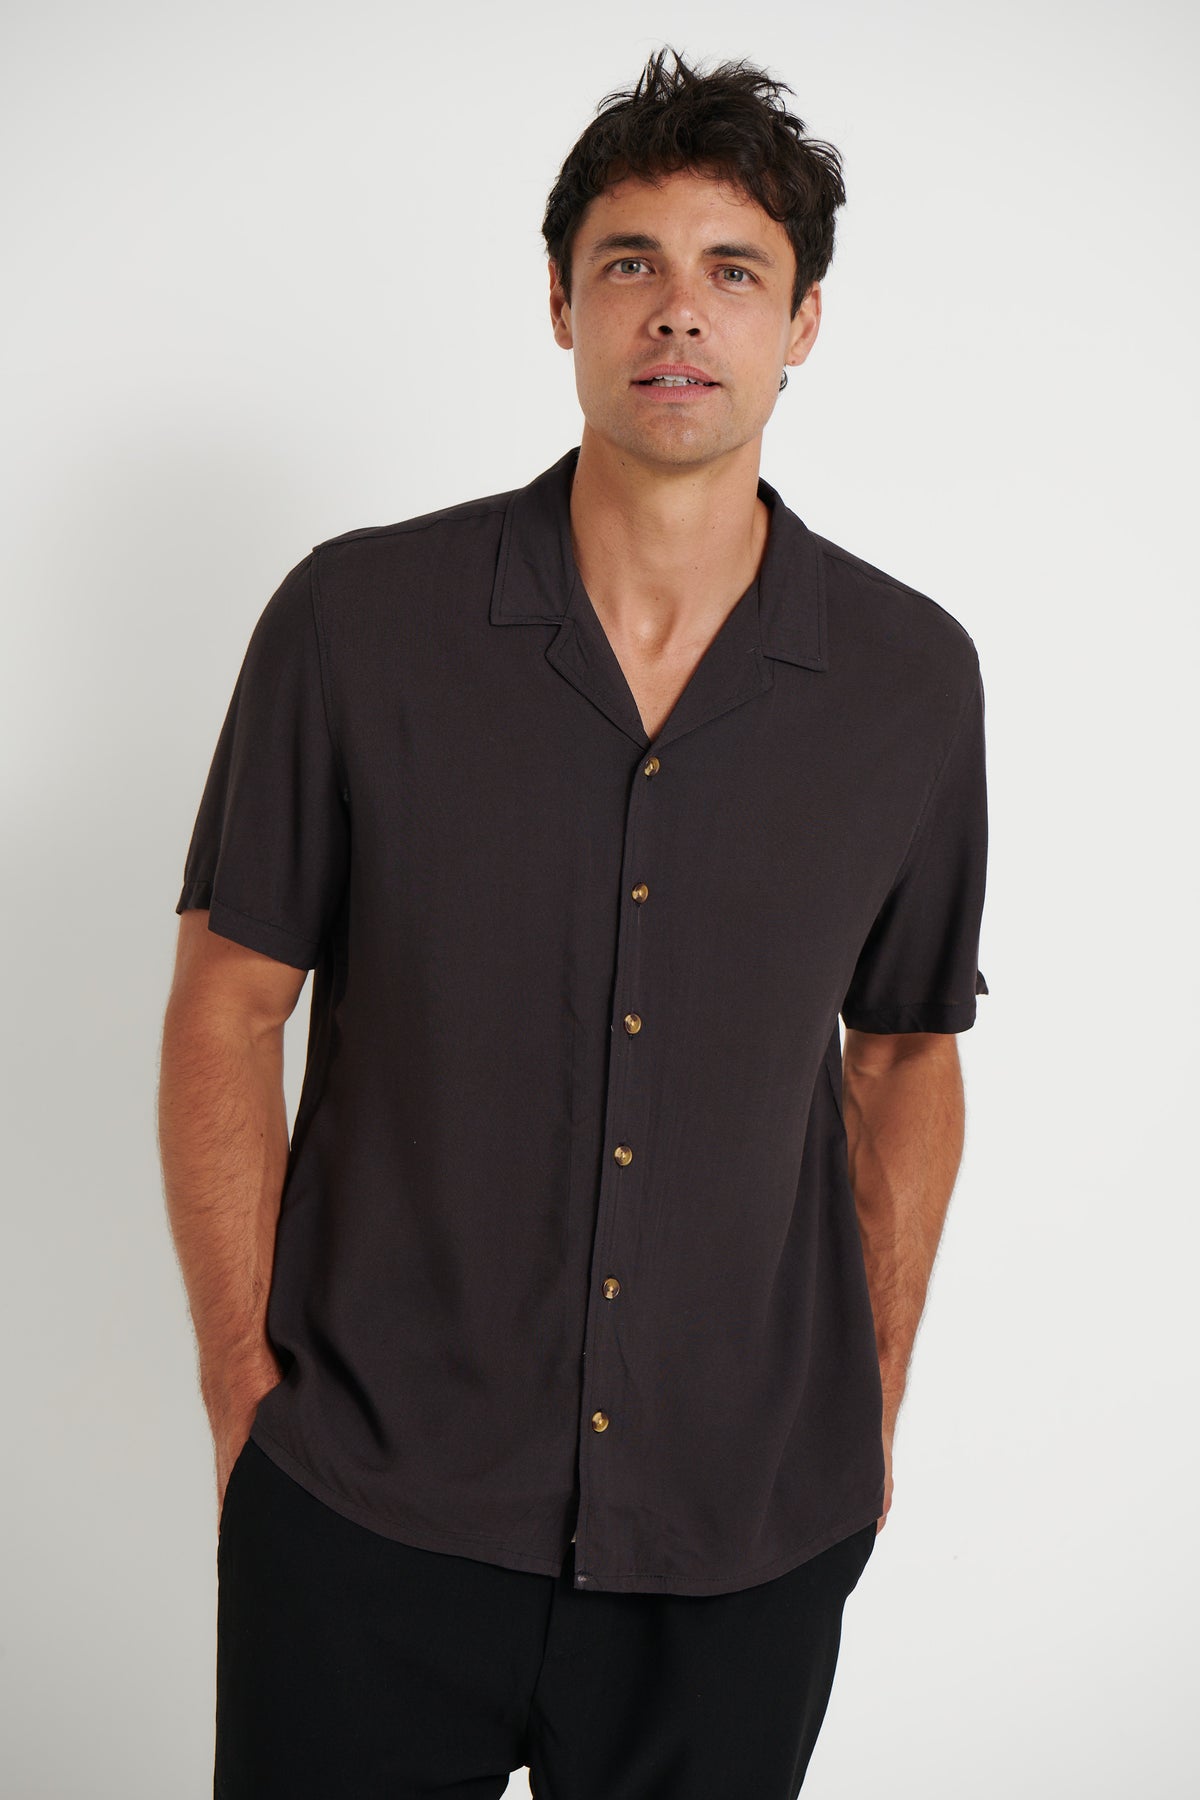 Jake Rayon Shirt Black - FINAL SALE